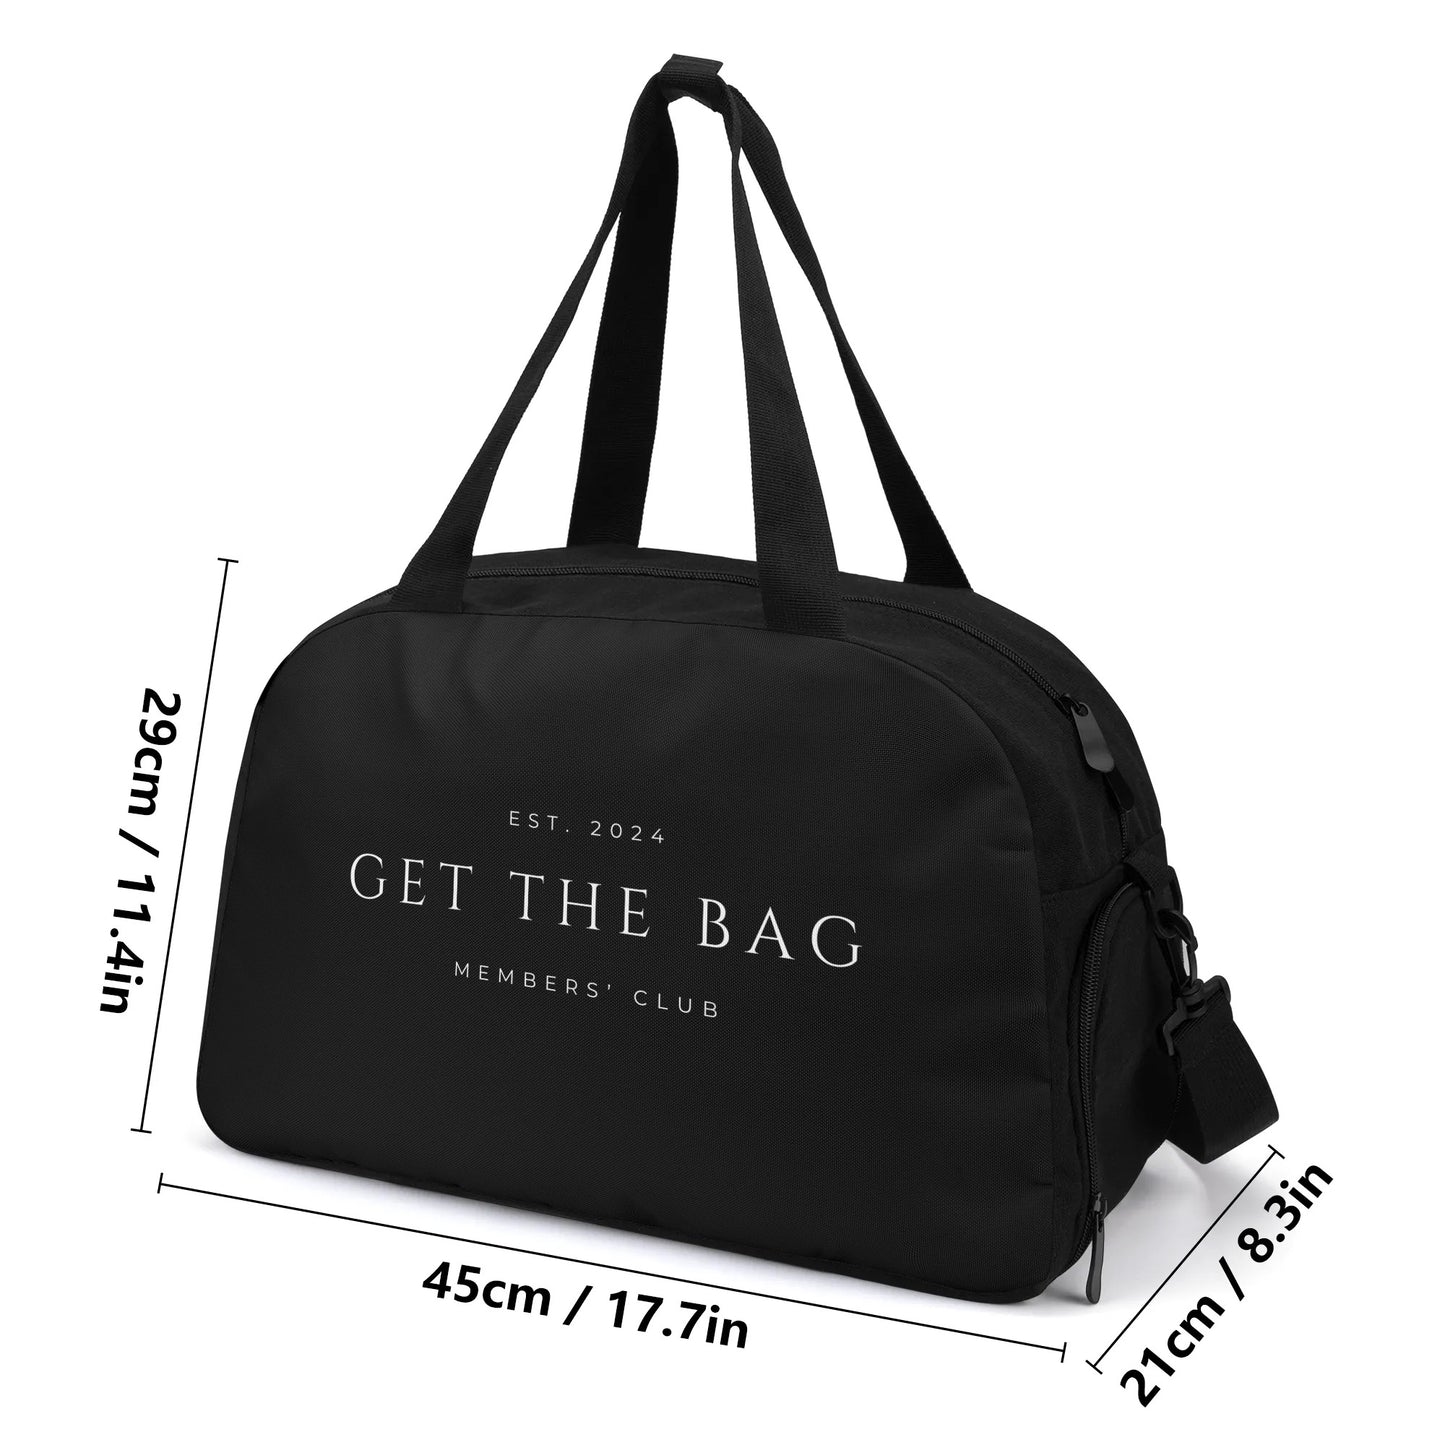 "GET THE BAG" SII MEMBERS' CLUB WEEKENDER BAG